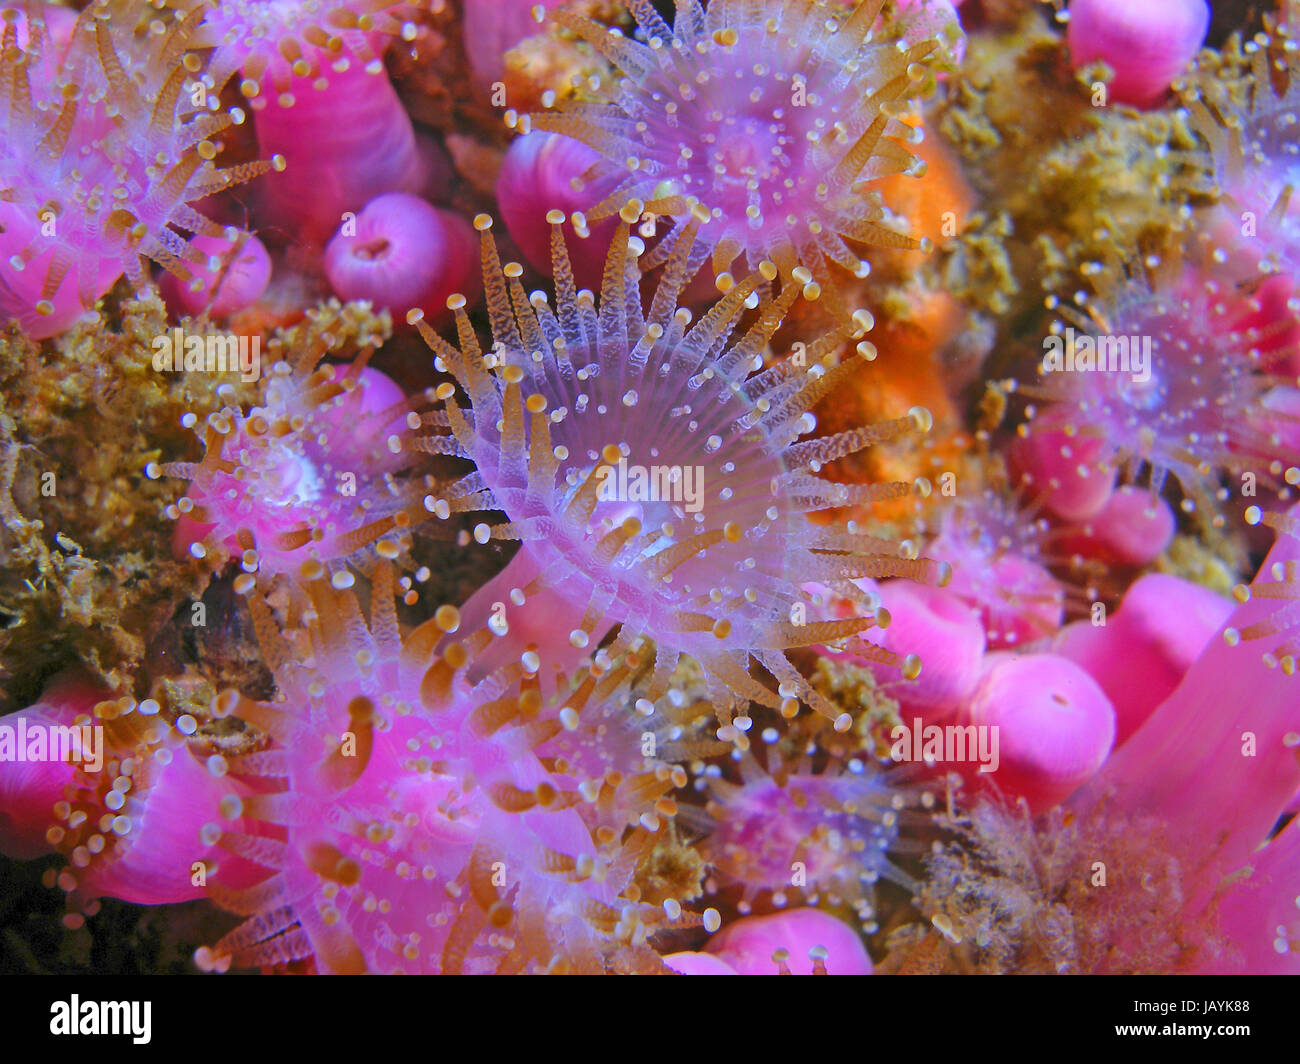 Gioiello colorato anemone con tentacoli aperto Foto Stock